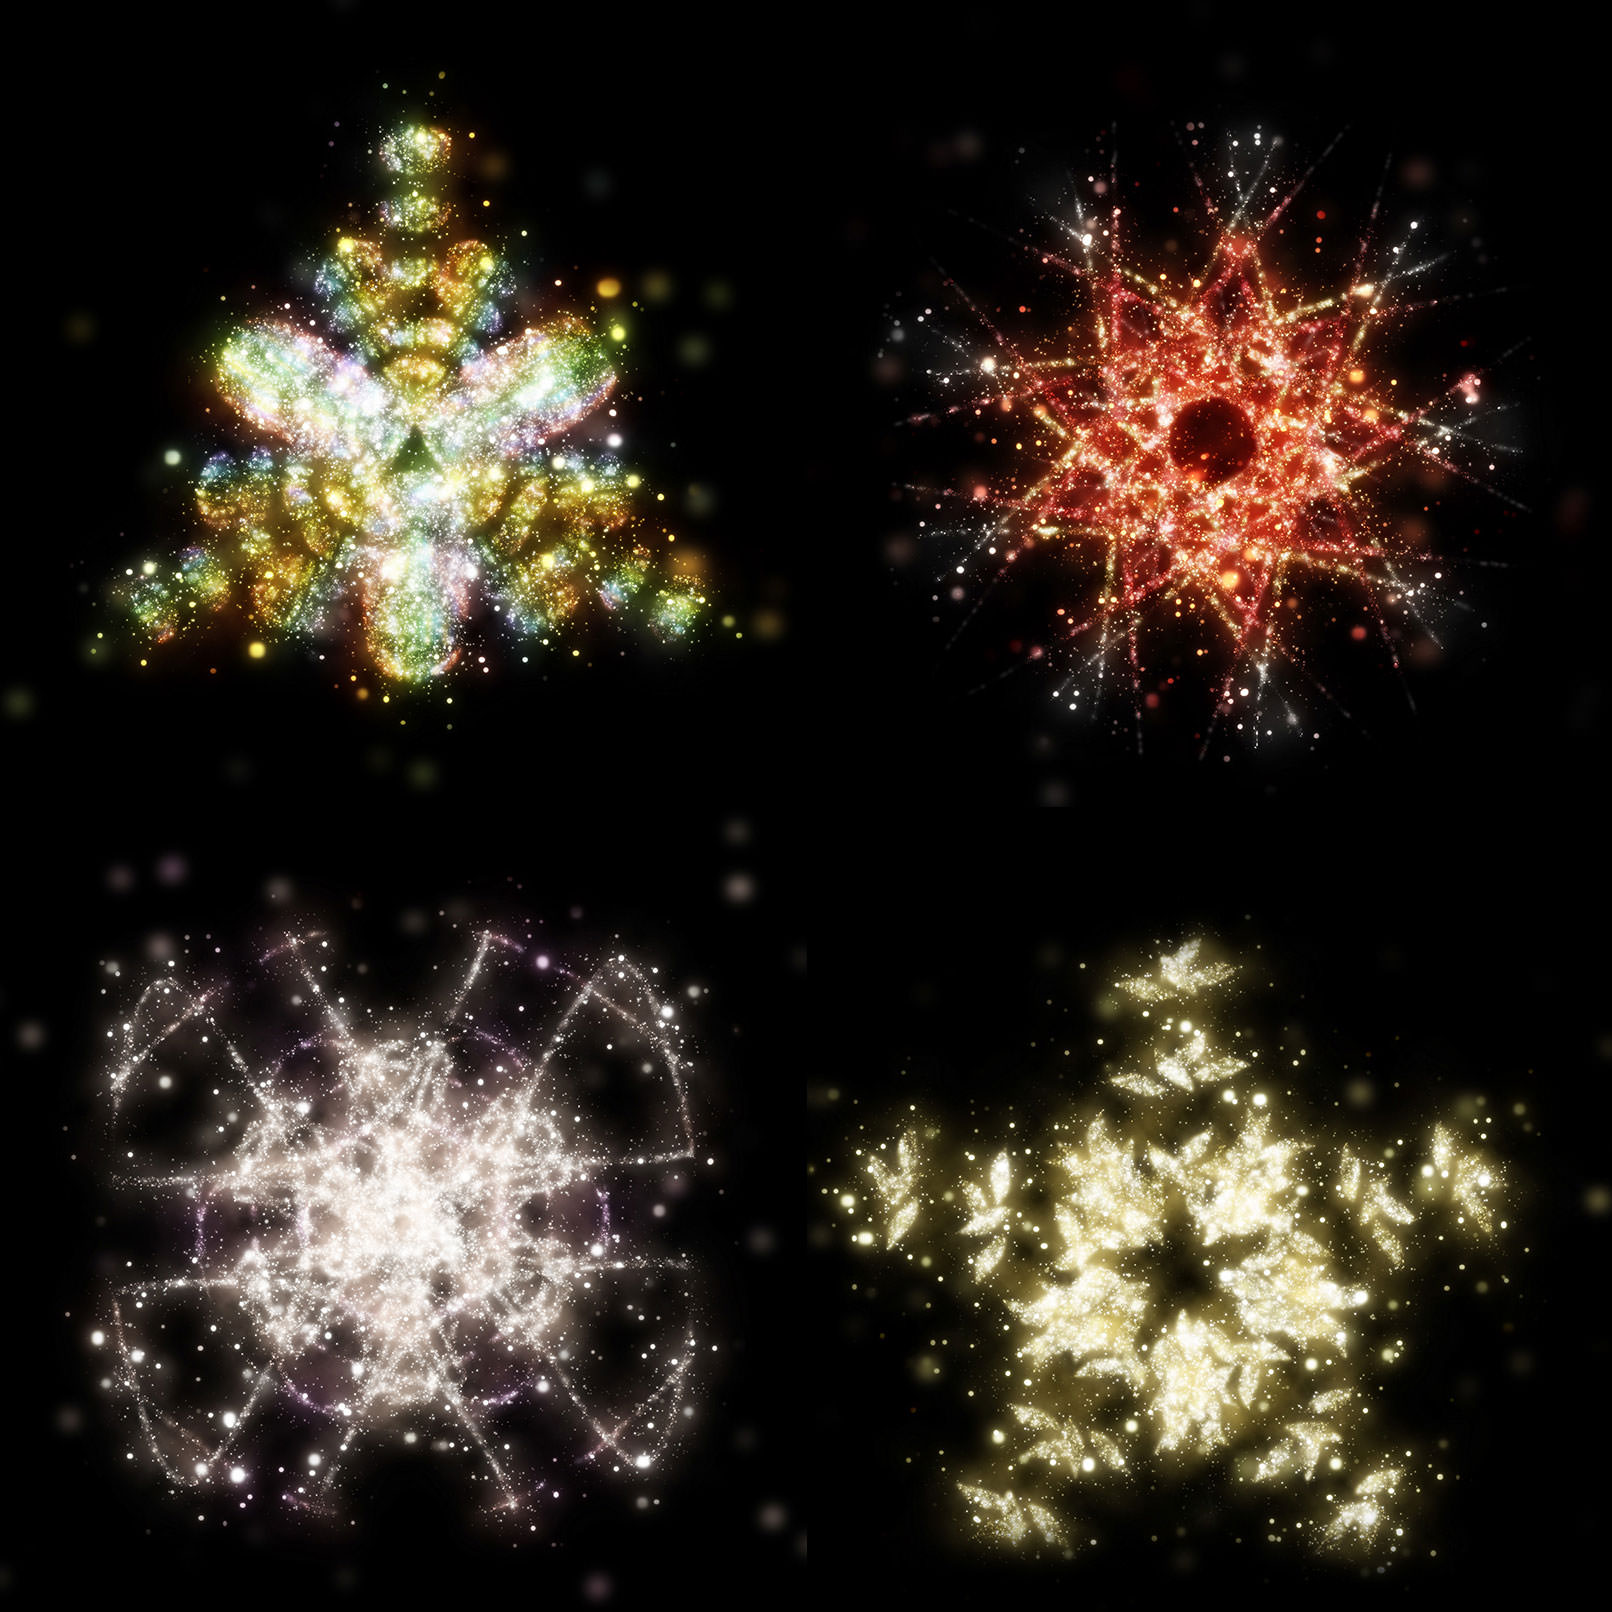 Sterne-Bilder und Sterne-Hintergrund für Glitzereffekte